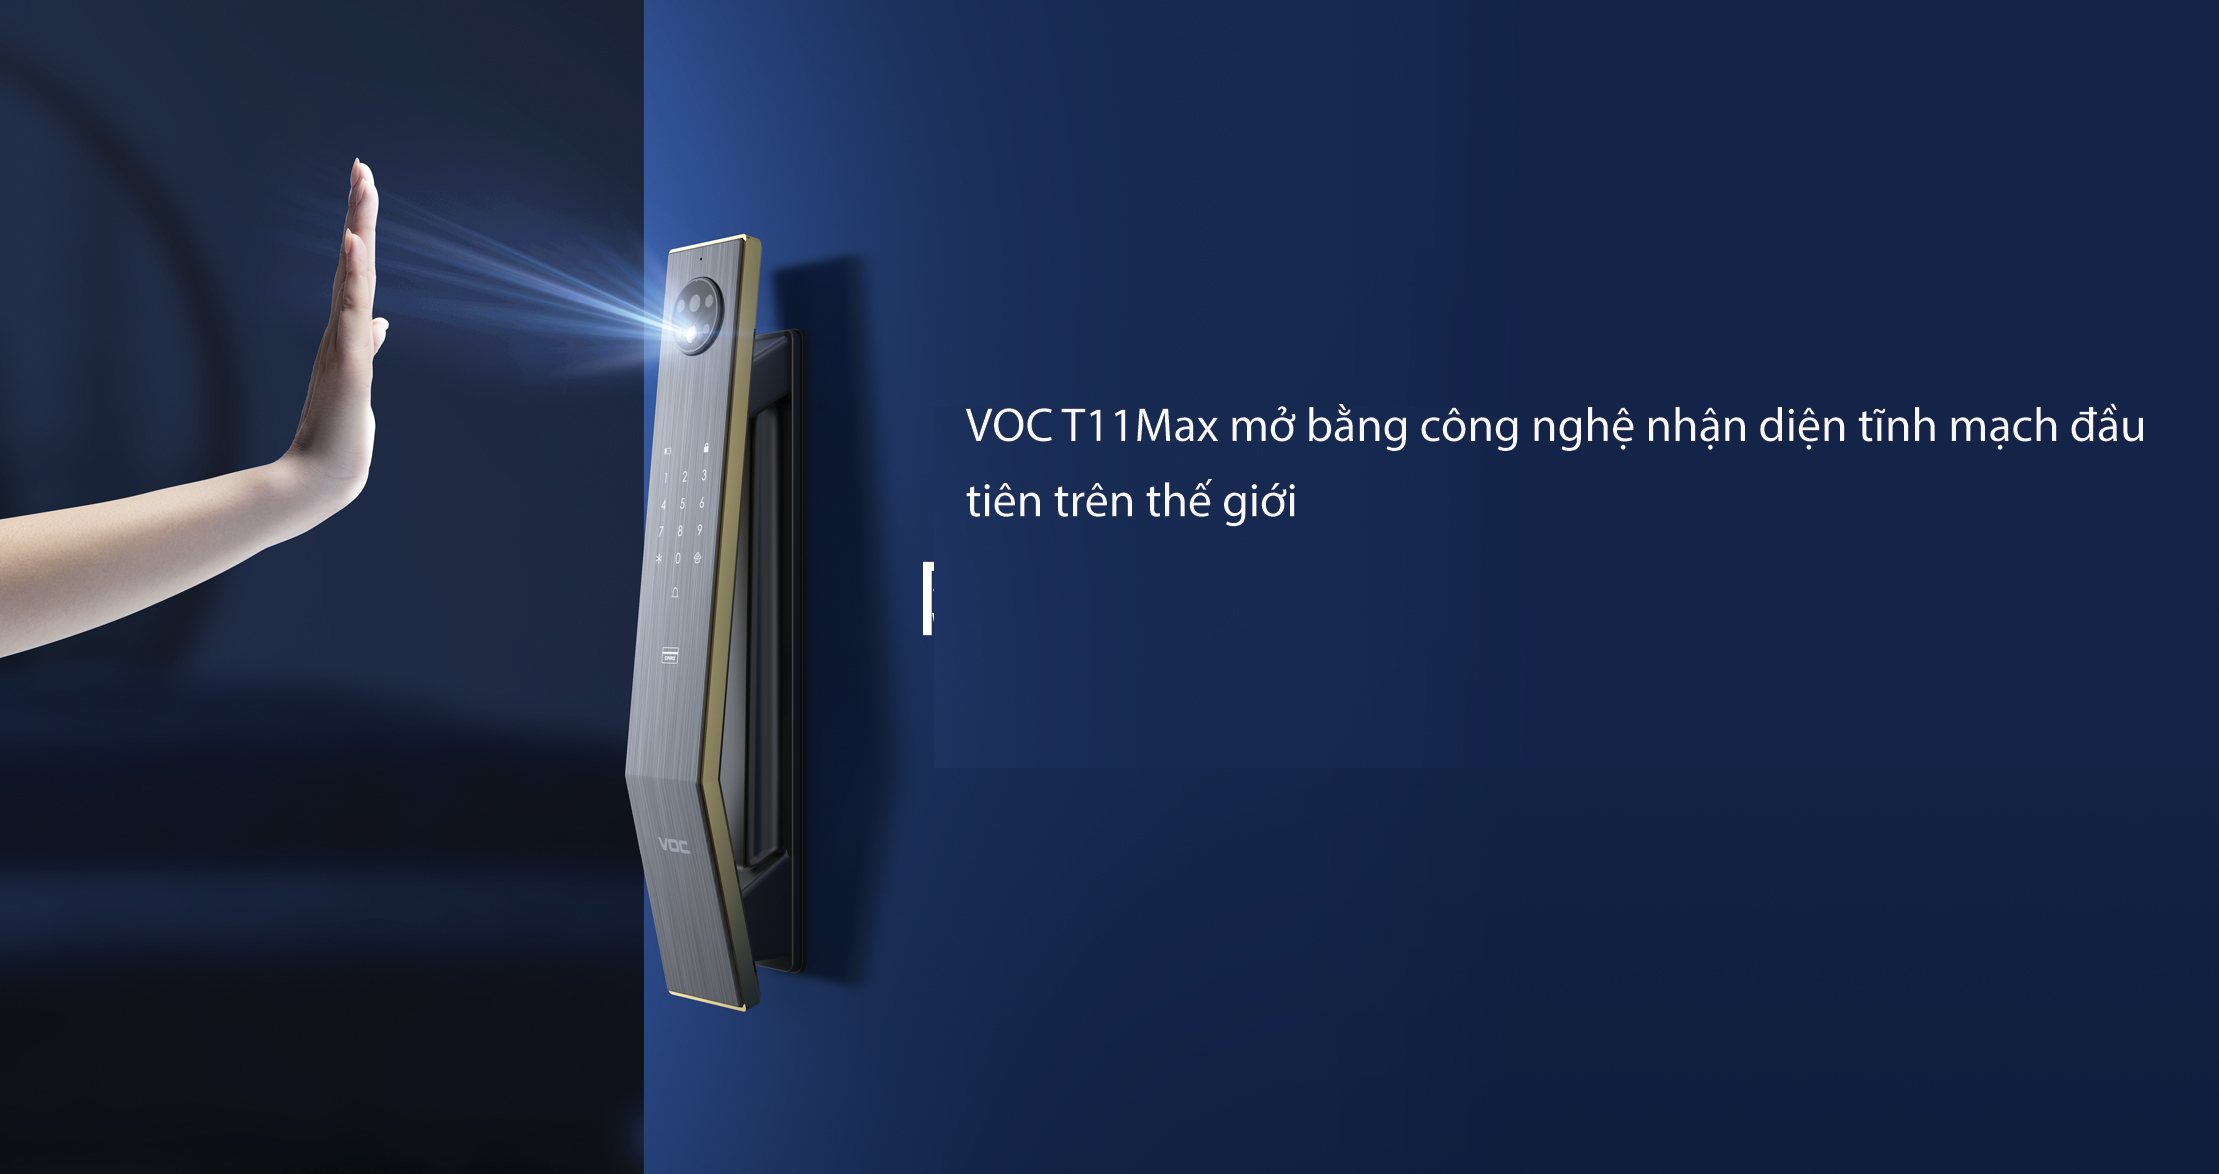 Khóa Vân Tay VOC T11Max Công Nghệ Mở Bằng Nhận Diện Tĩnh Mạch Bàn Tay Mới Nhất Hiện Nay